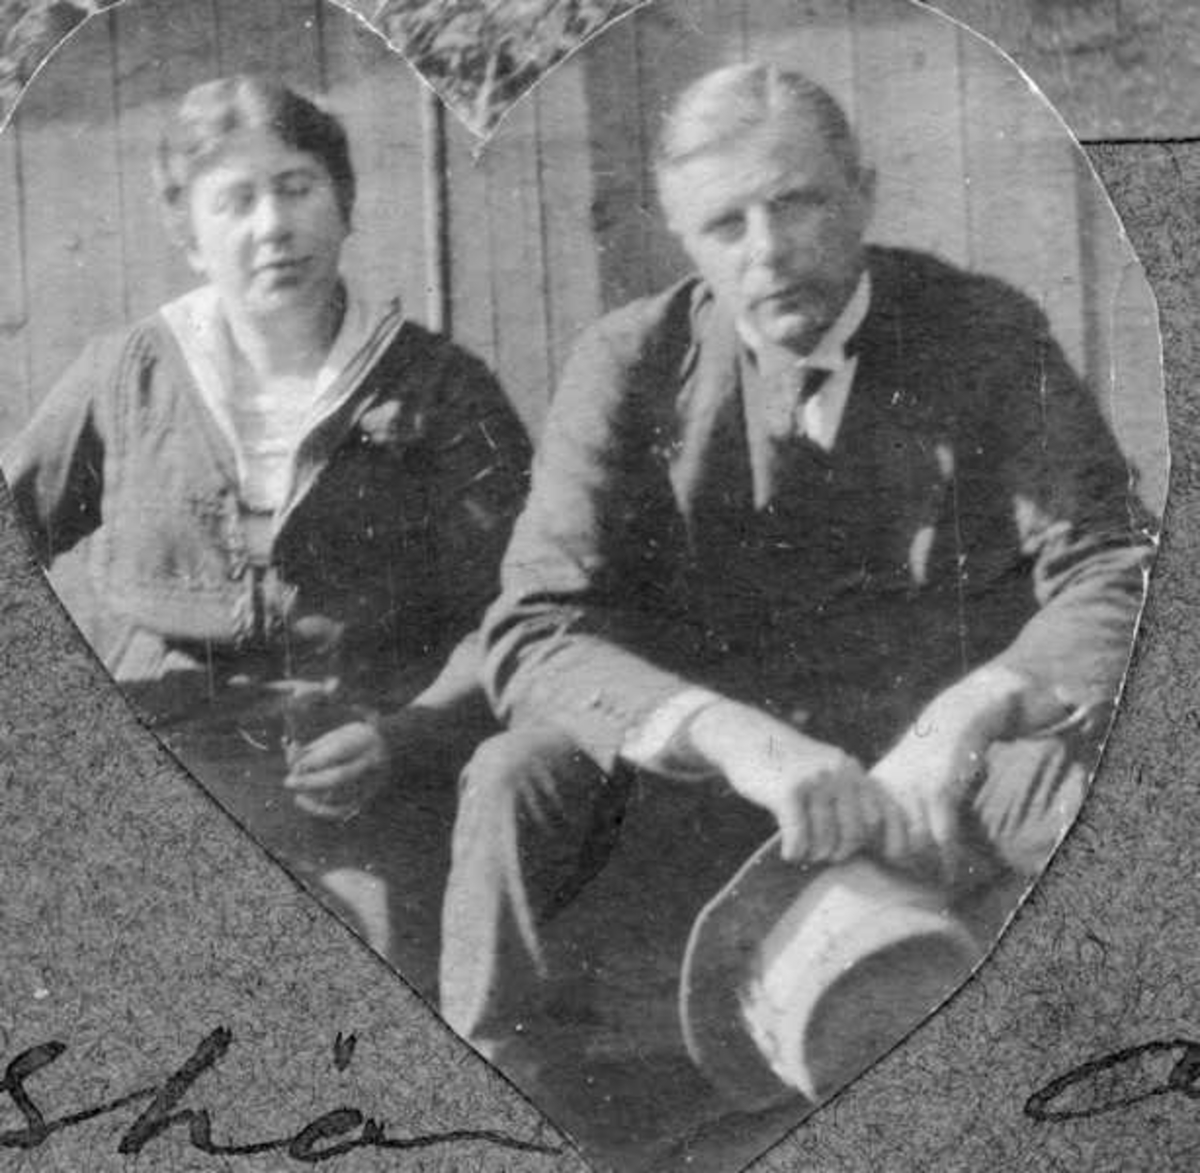 Kirsten og Jens Frederiksen. Bildetekst: "Glædelig jul! Godt nytaar ønskes Christian og Maren af Jens og Kirsten. London 1919."